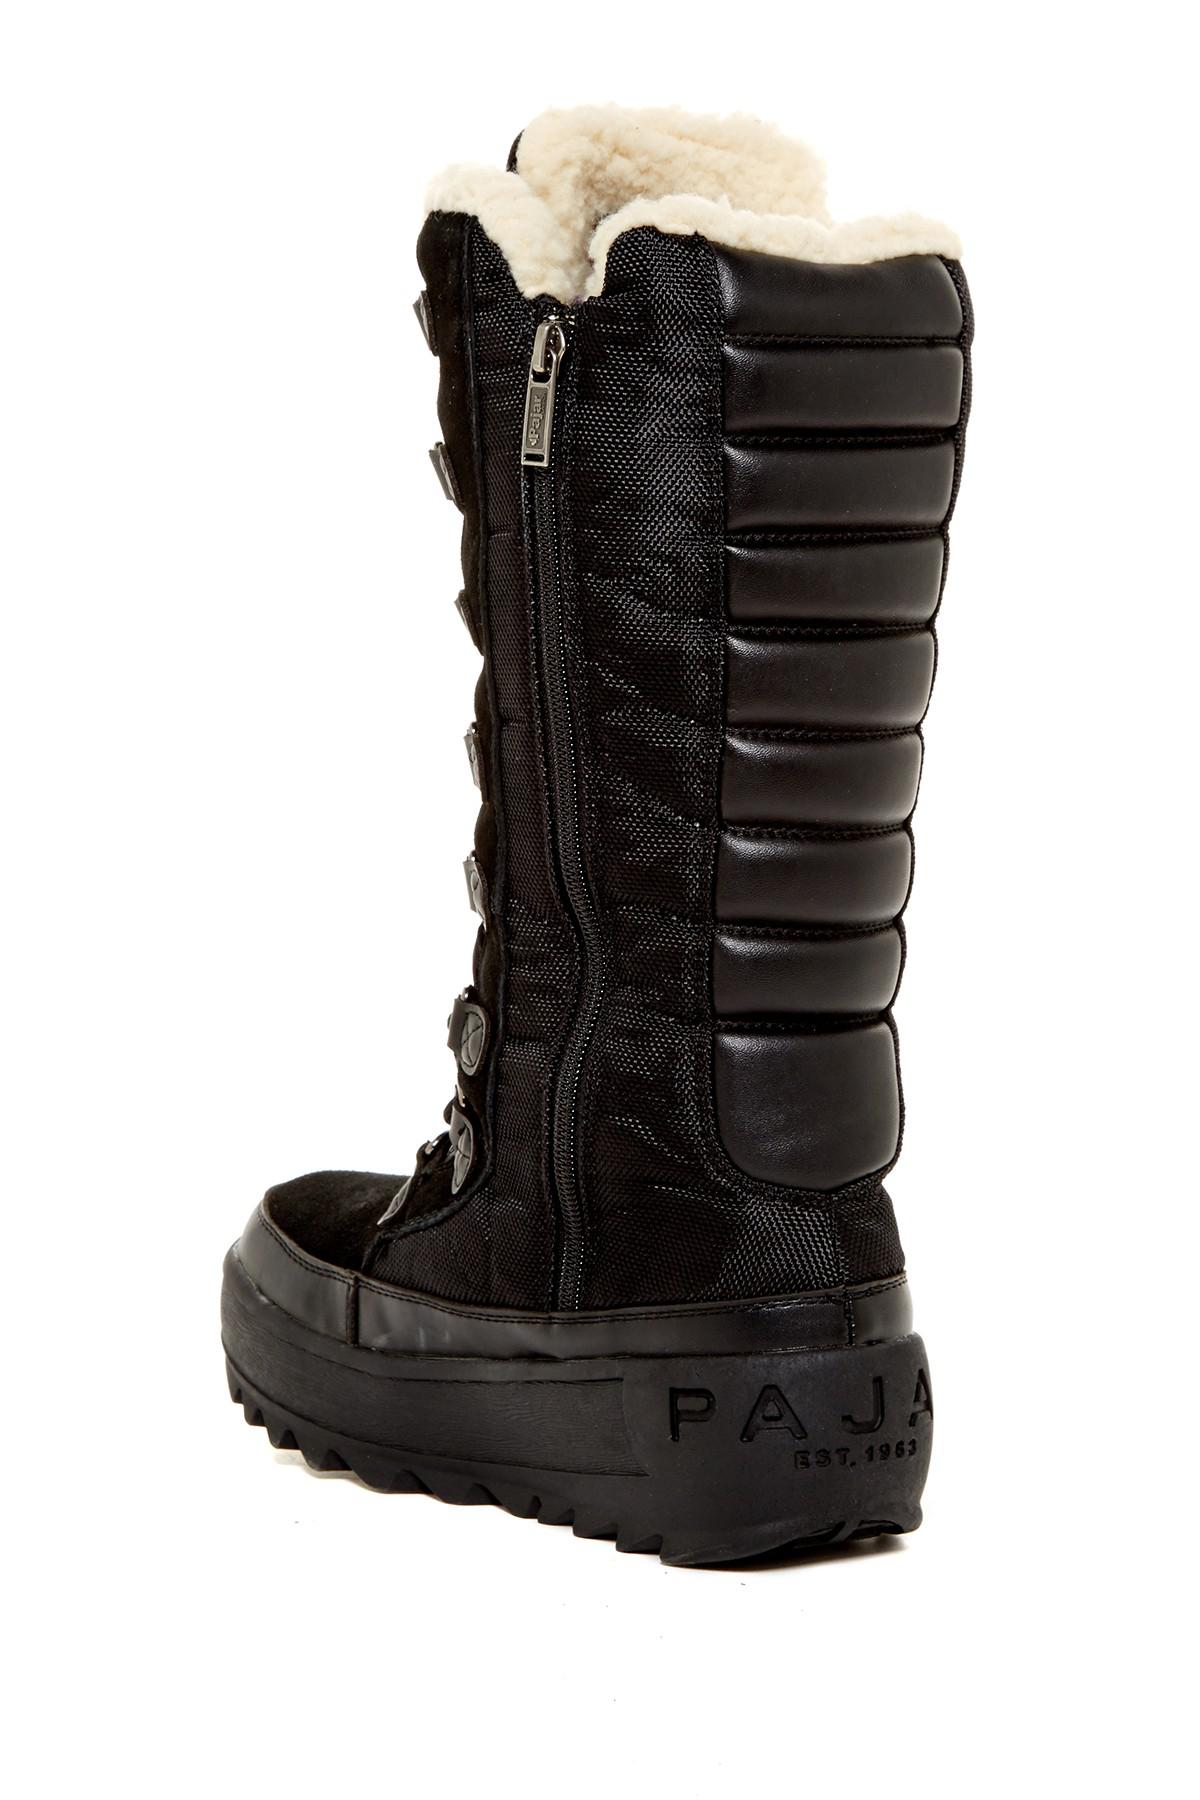 pajar greenland boot